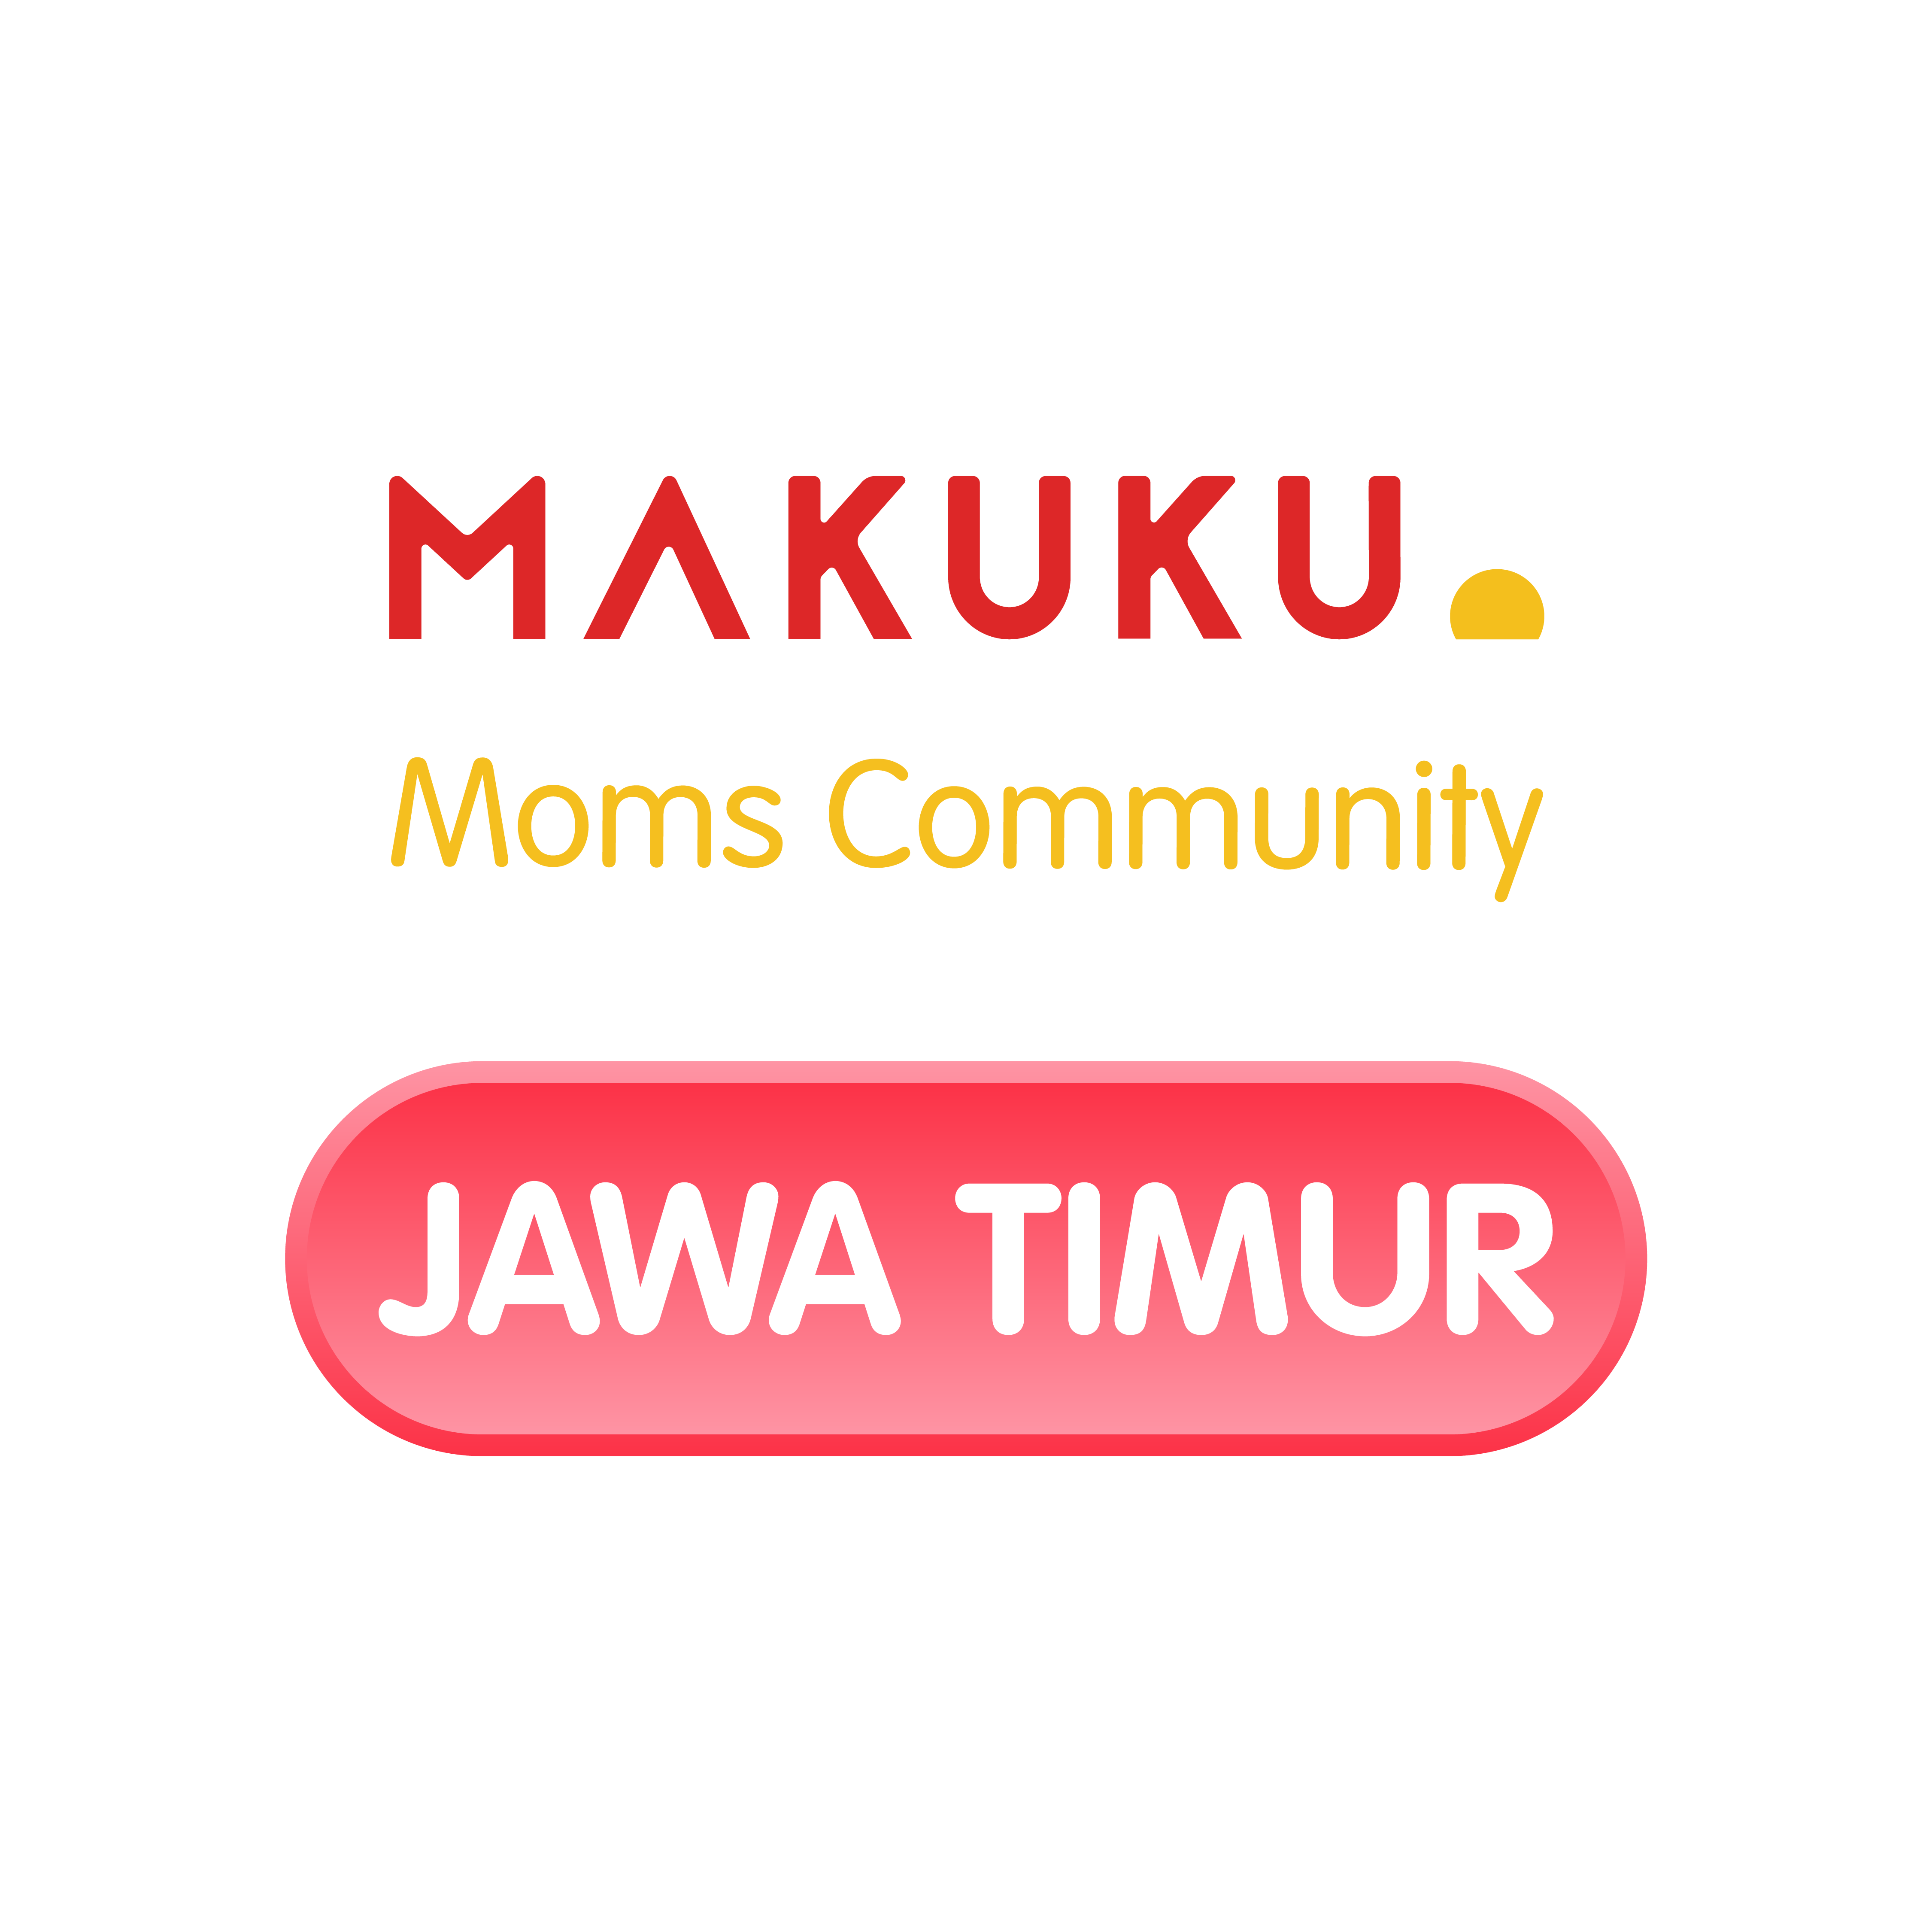 MAKUKU Community - Area Jawa Timur